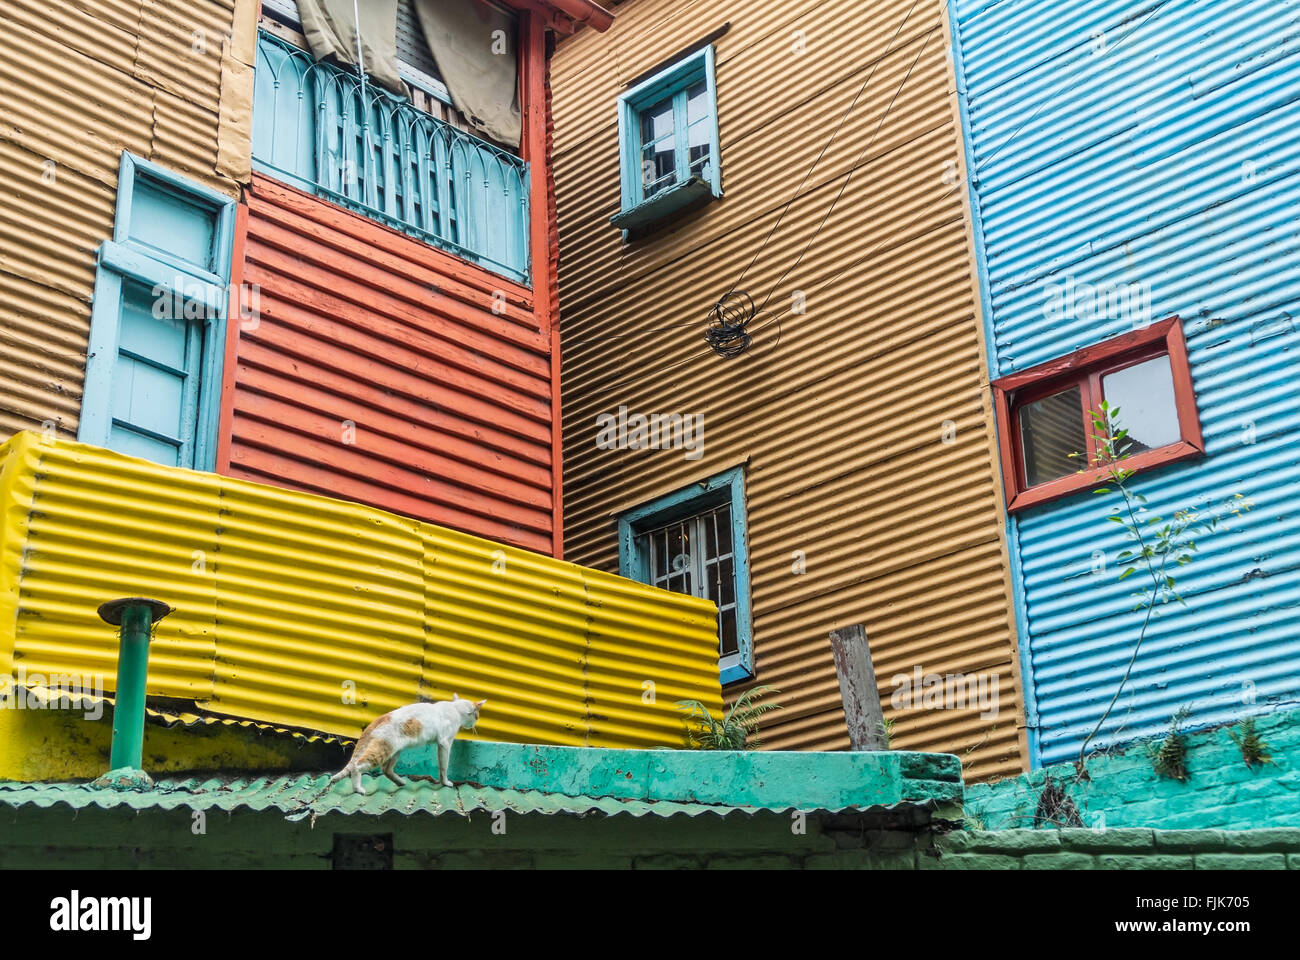 Inquadratura della facciata di un edificio in Caminito, il famoso e popolare striscia pedonale nel quartiere di La Boca. Foto Stock